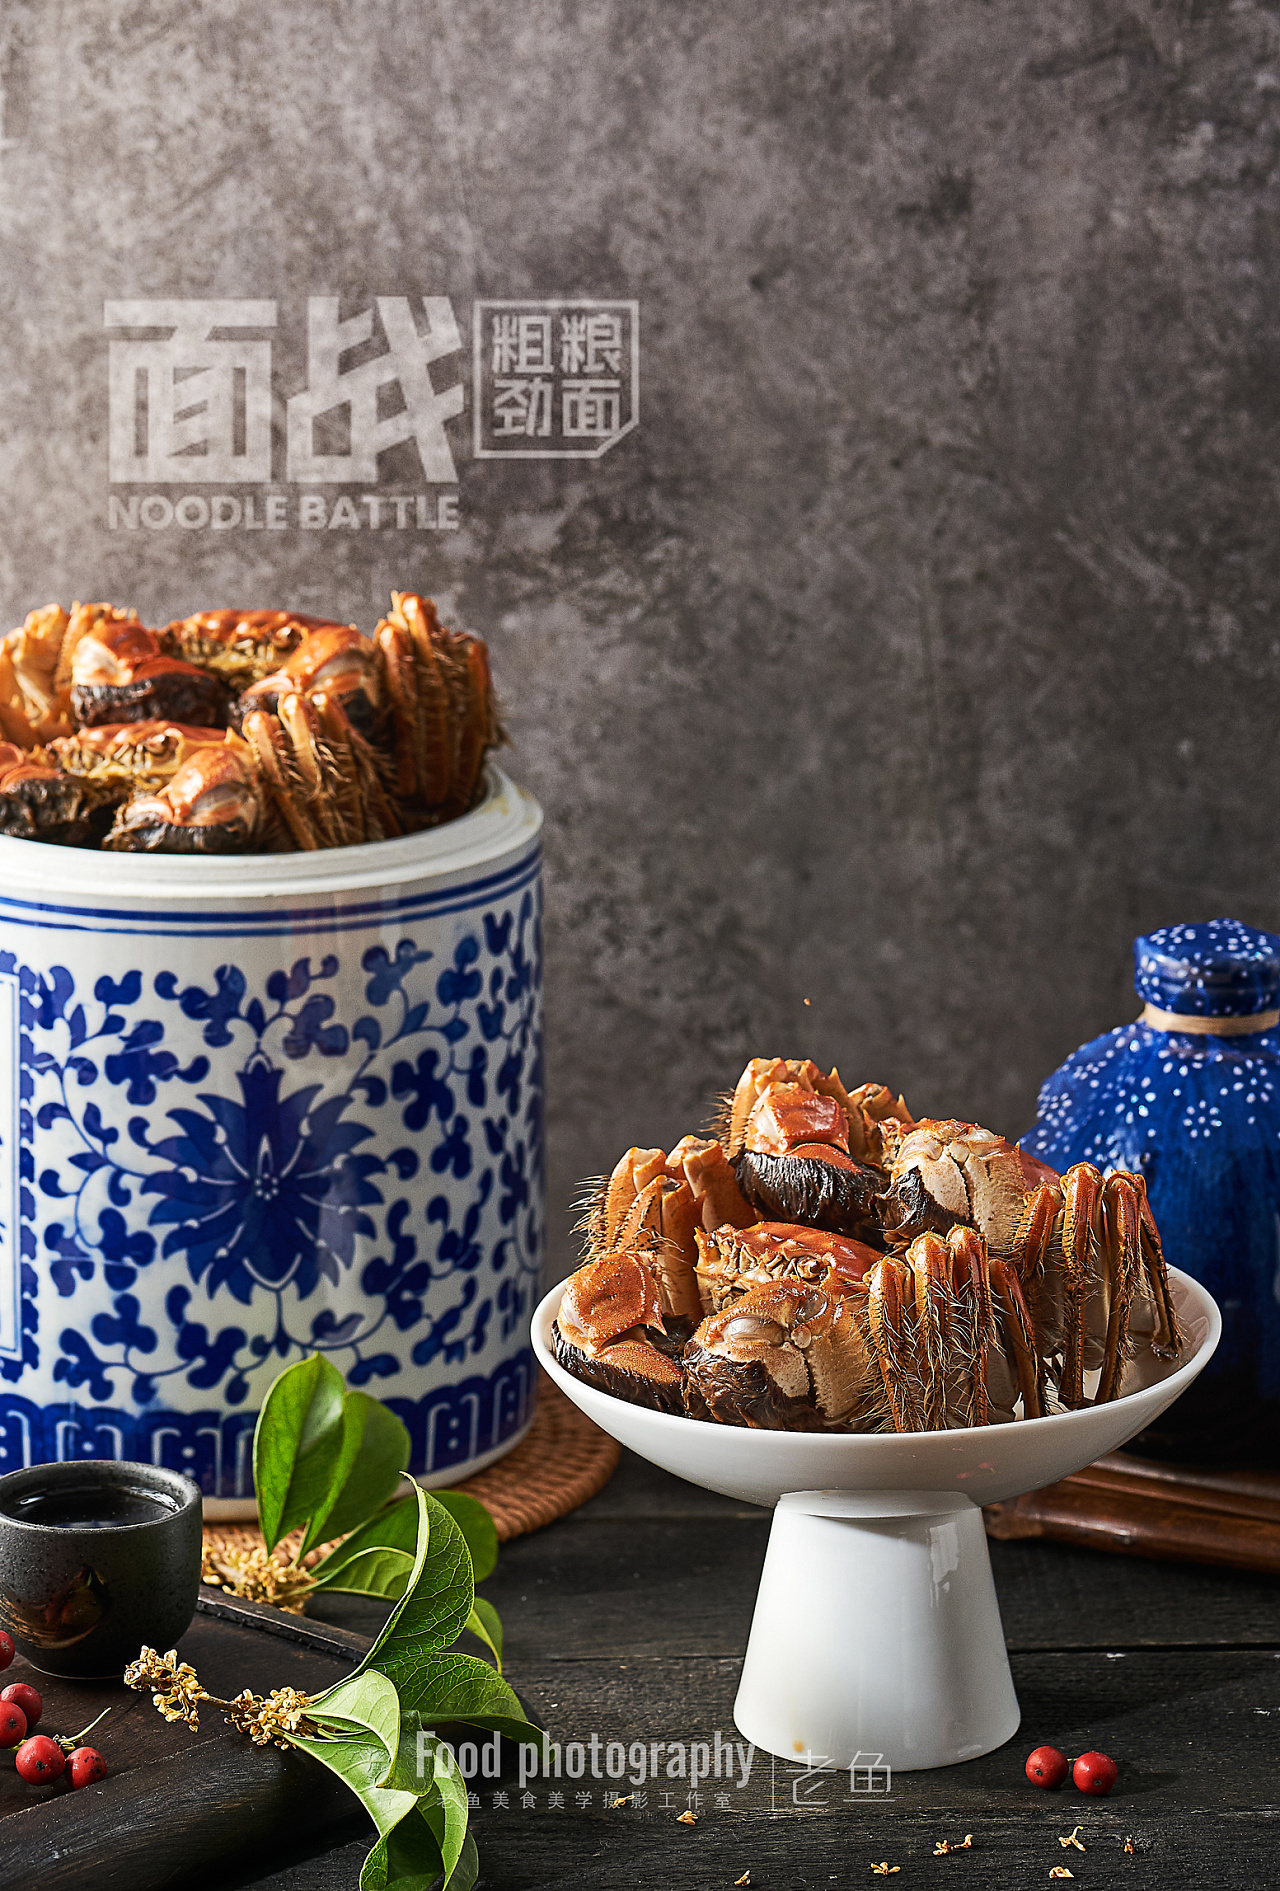 上海专业菜品拍摄图片